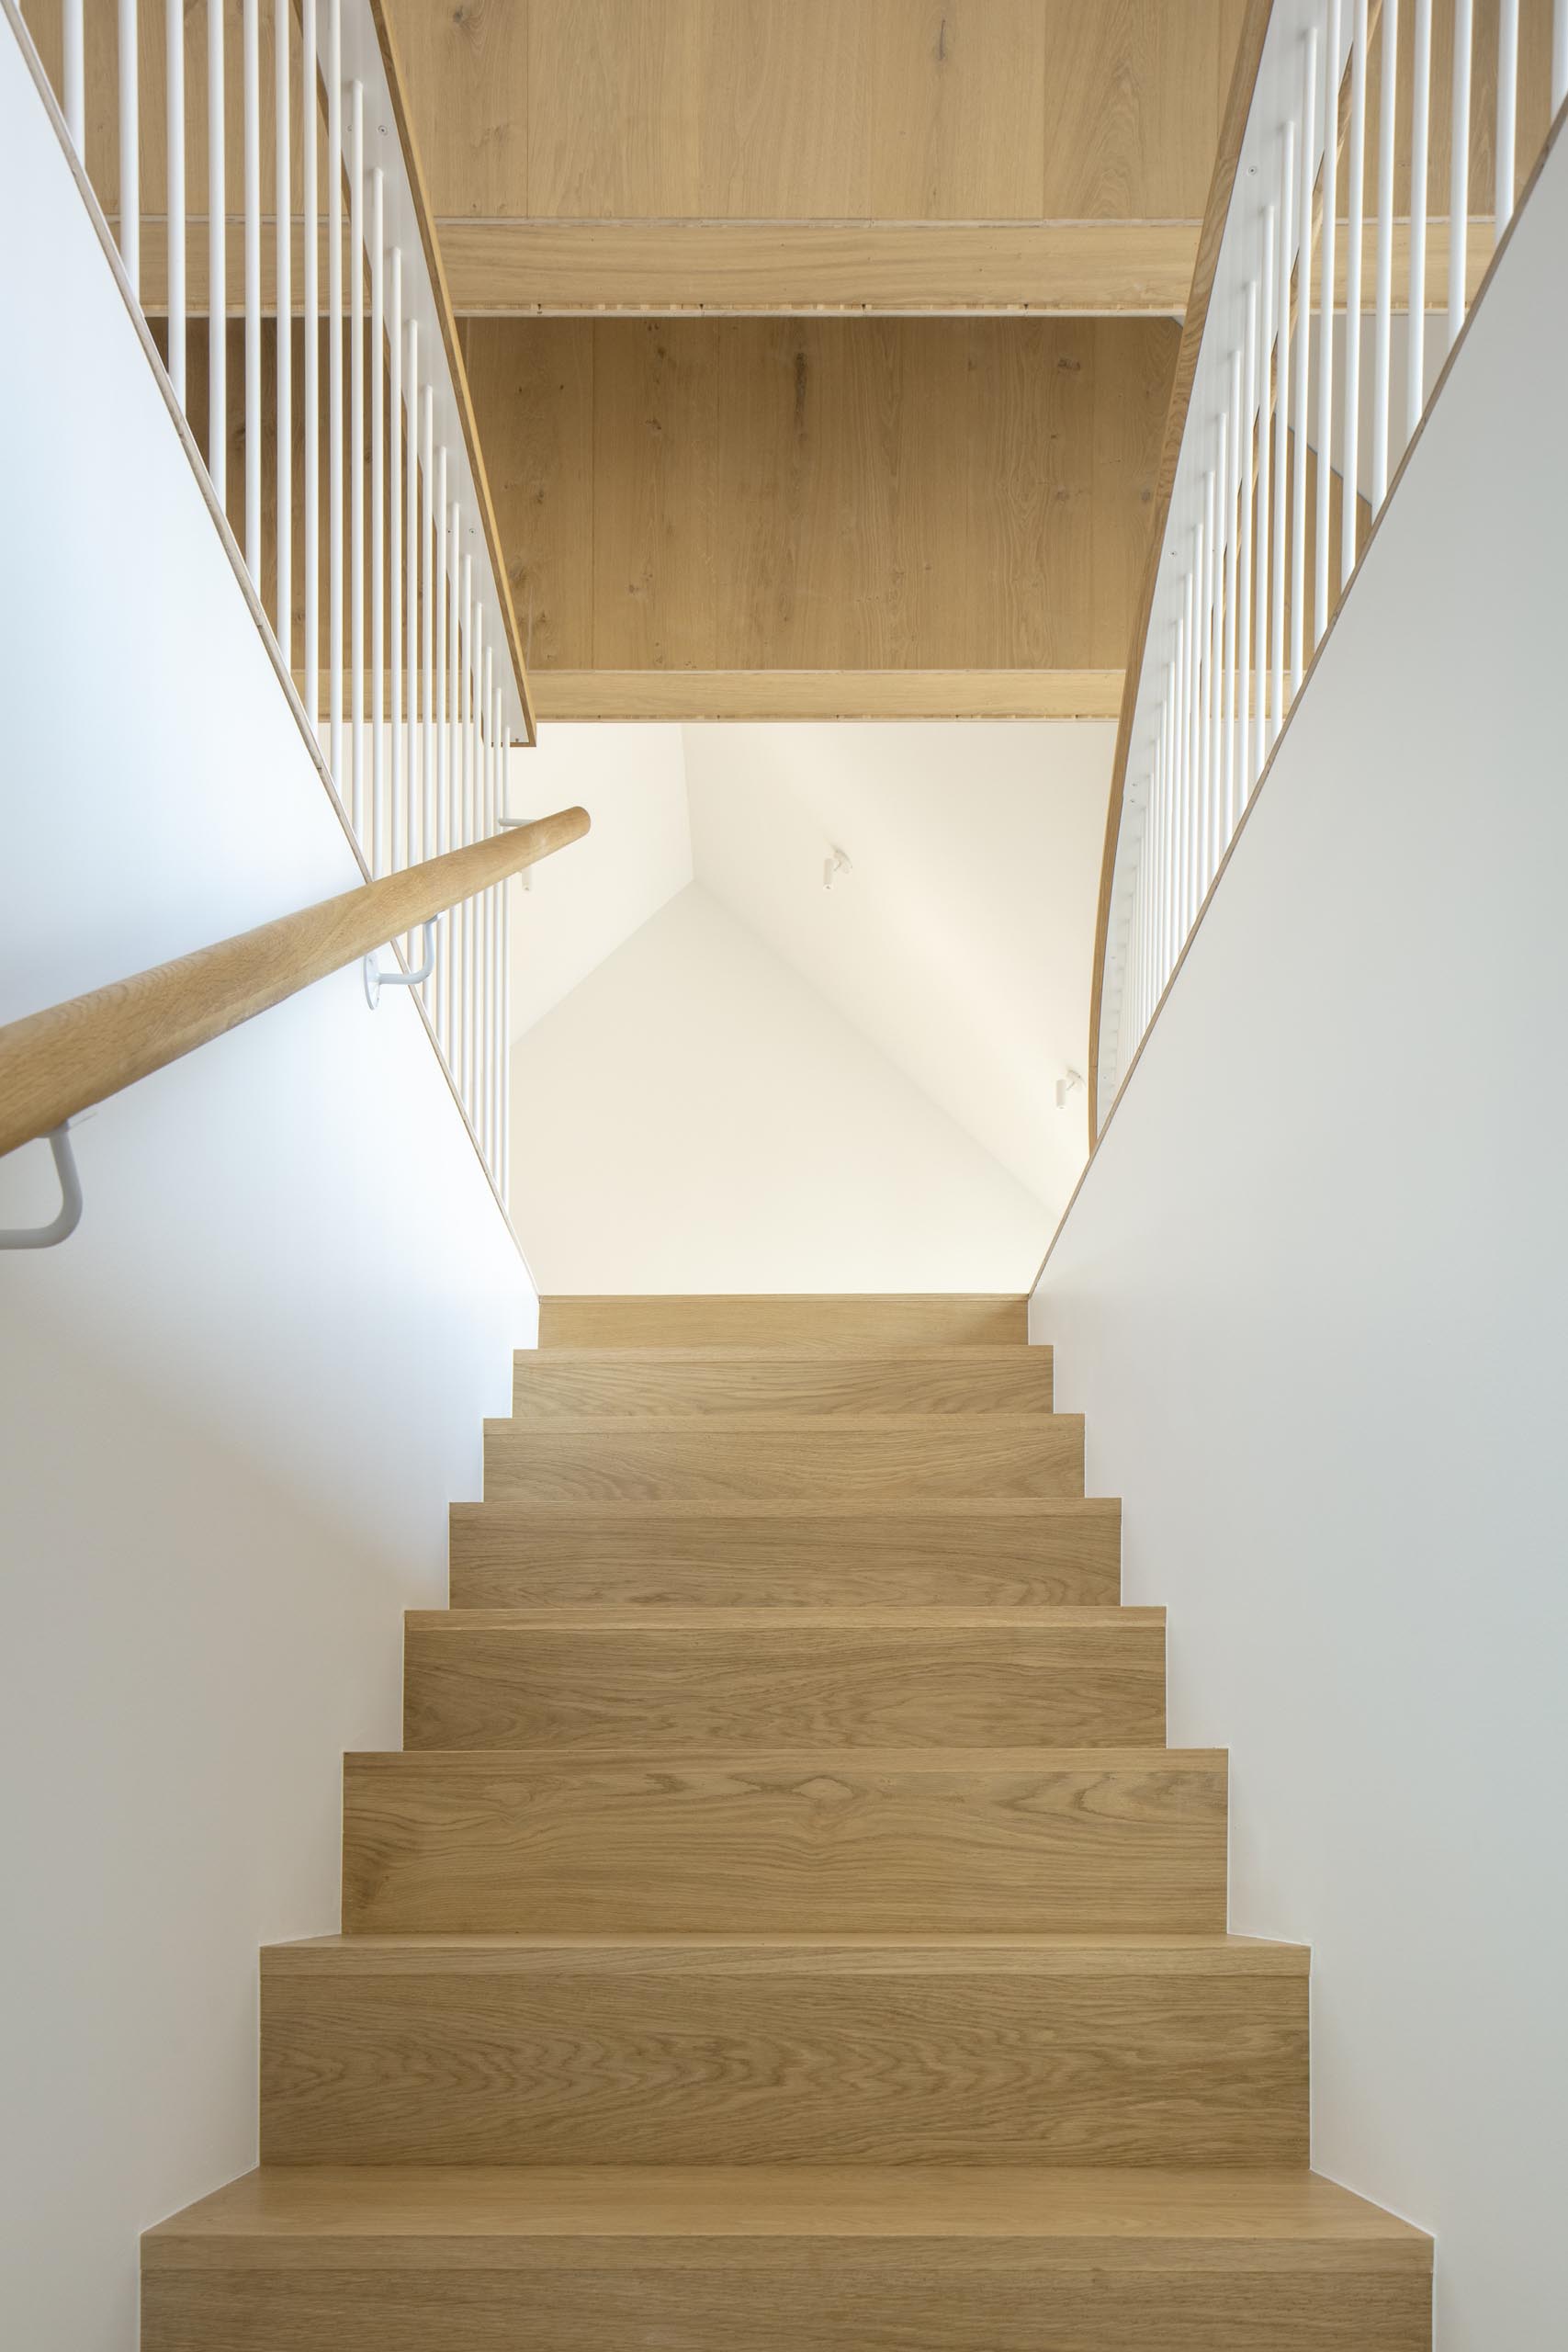 Деревянная лестница с подходящими перилами ведет в общественные зоны этого современного дома.